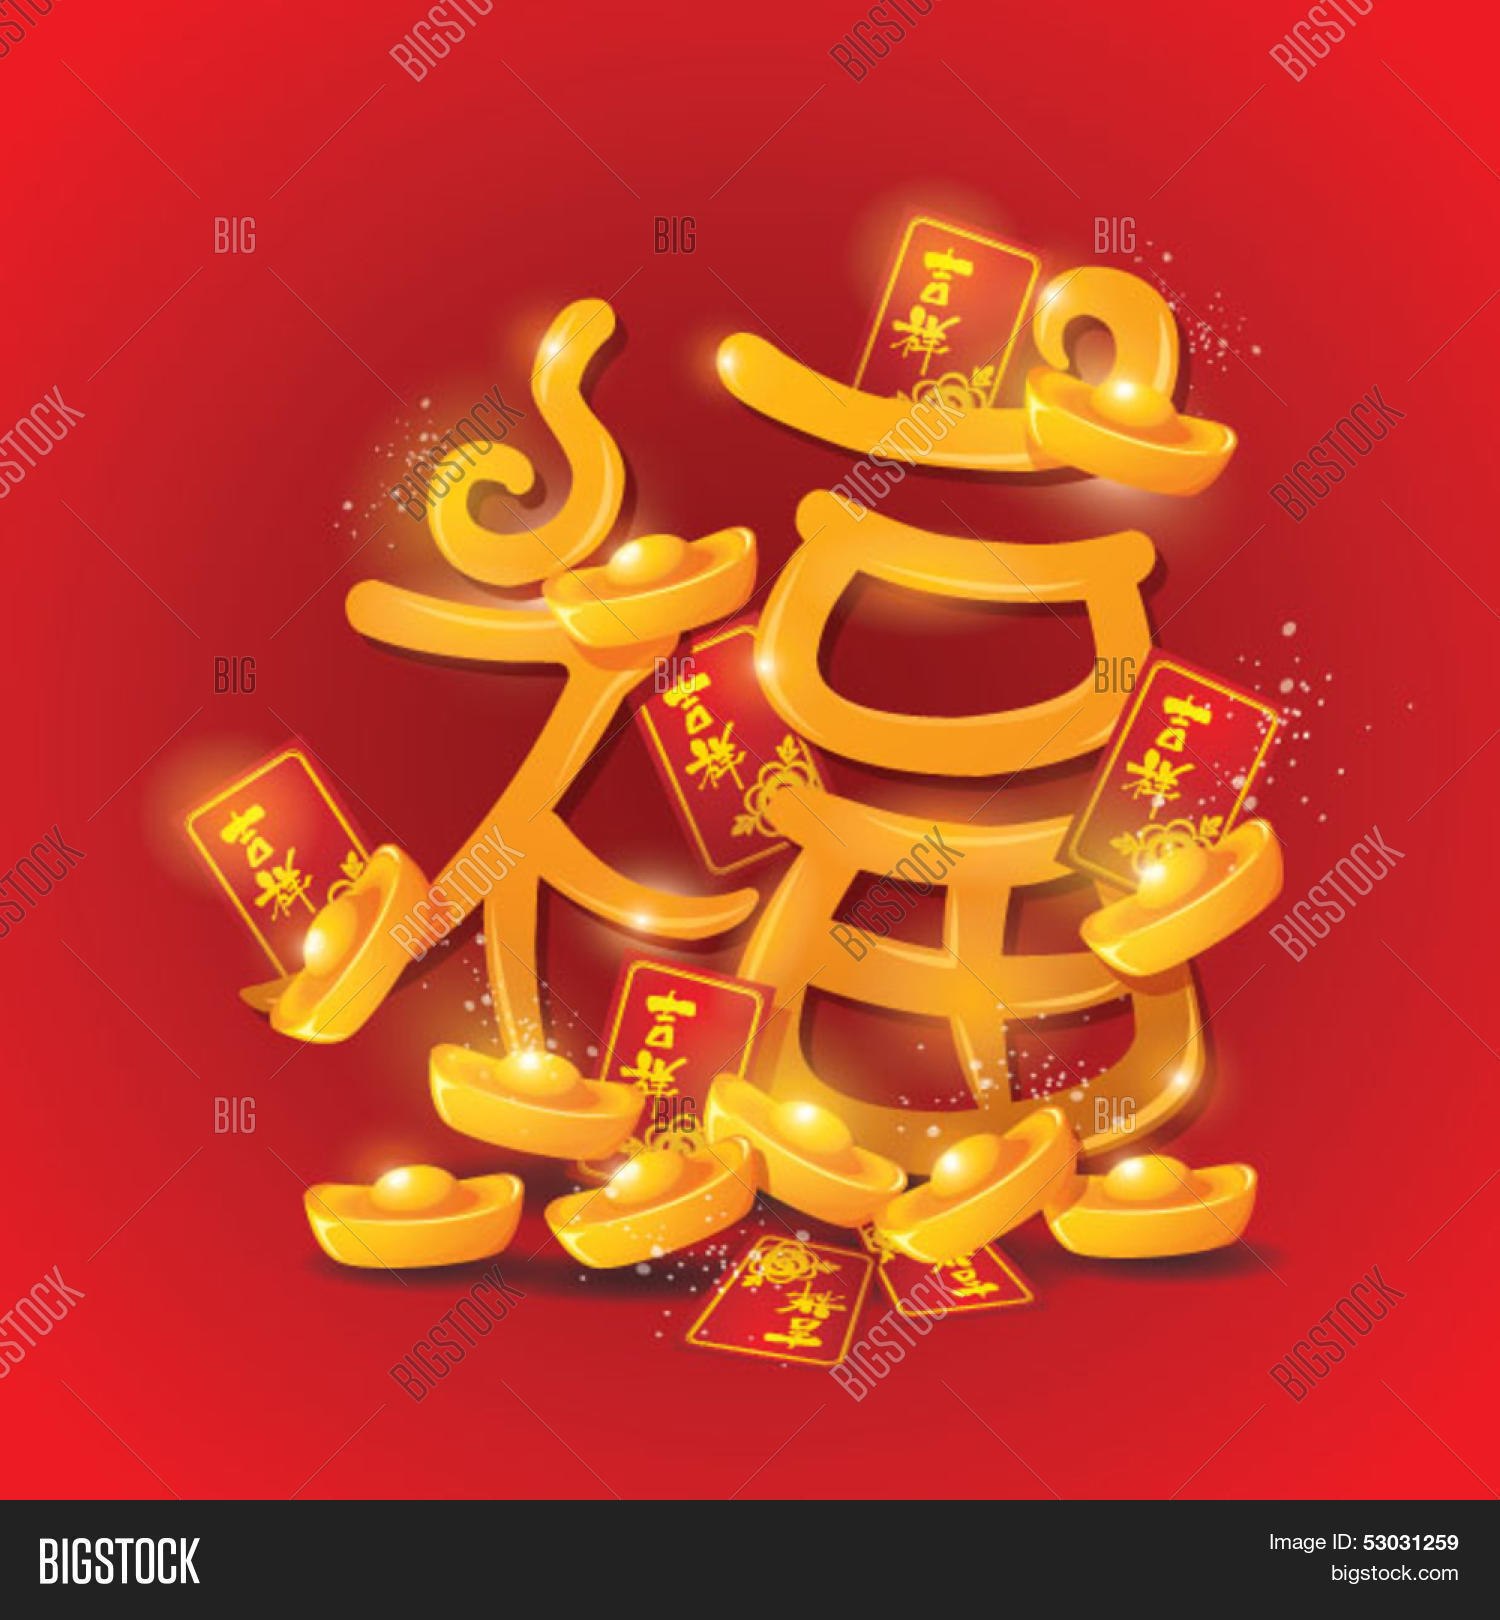 Китайская иероглиф год. Китайский символ богатства и процветания. Китайские символы богатства и благополучия. Знак удачи и богатства. Символ благополучия и богатства.